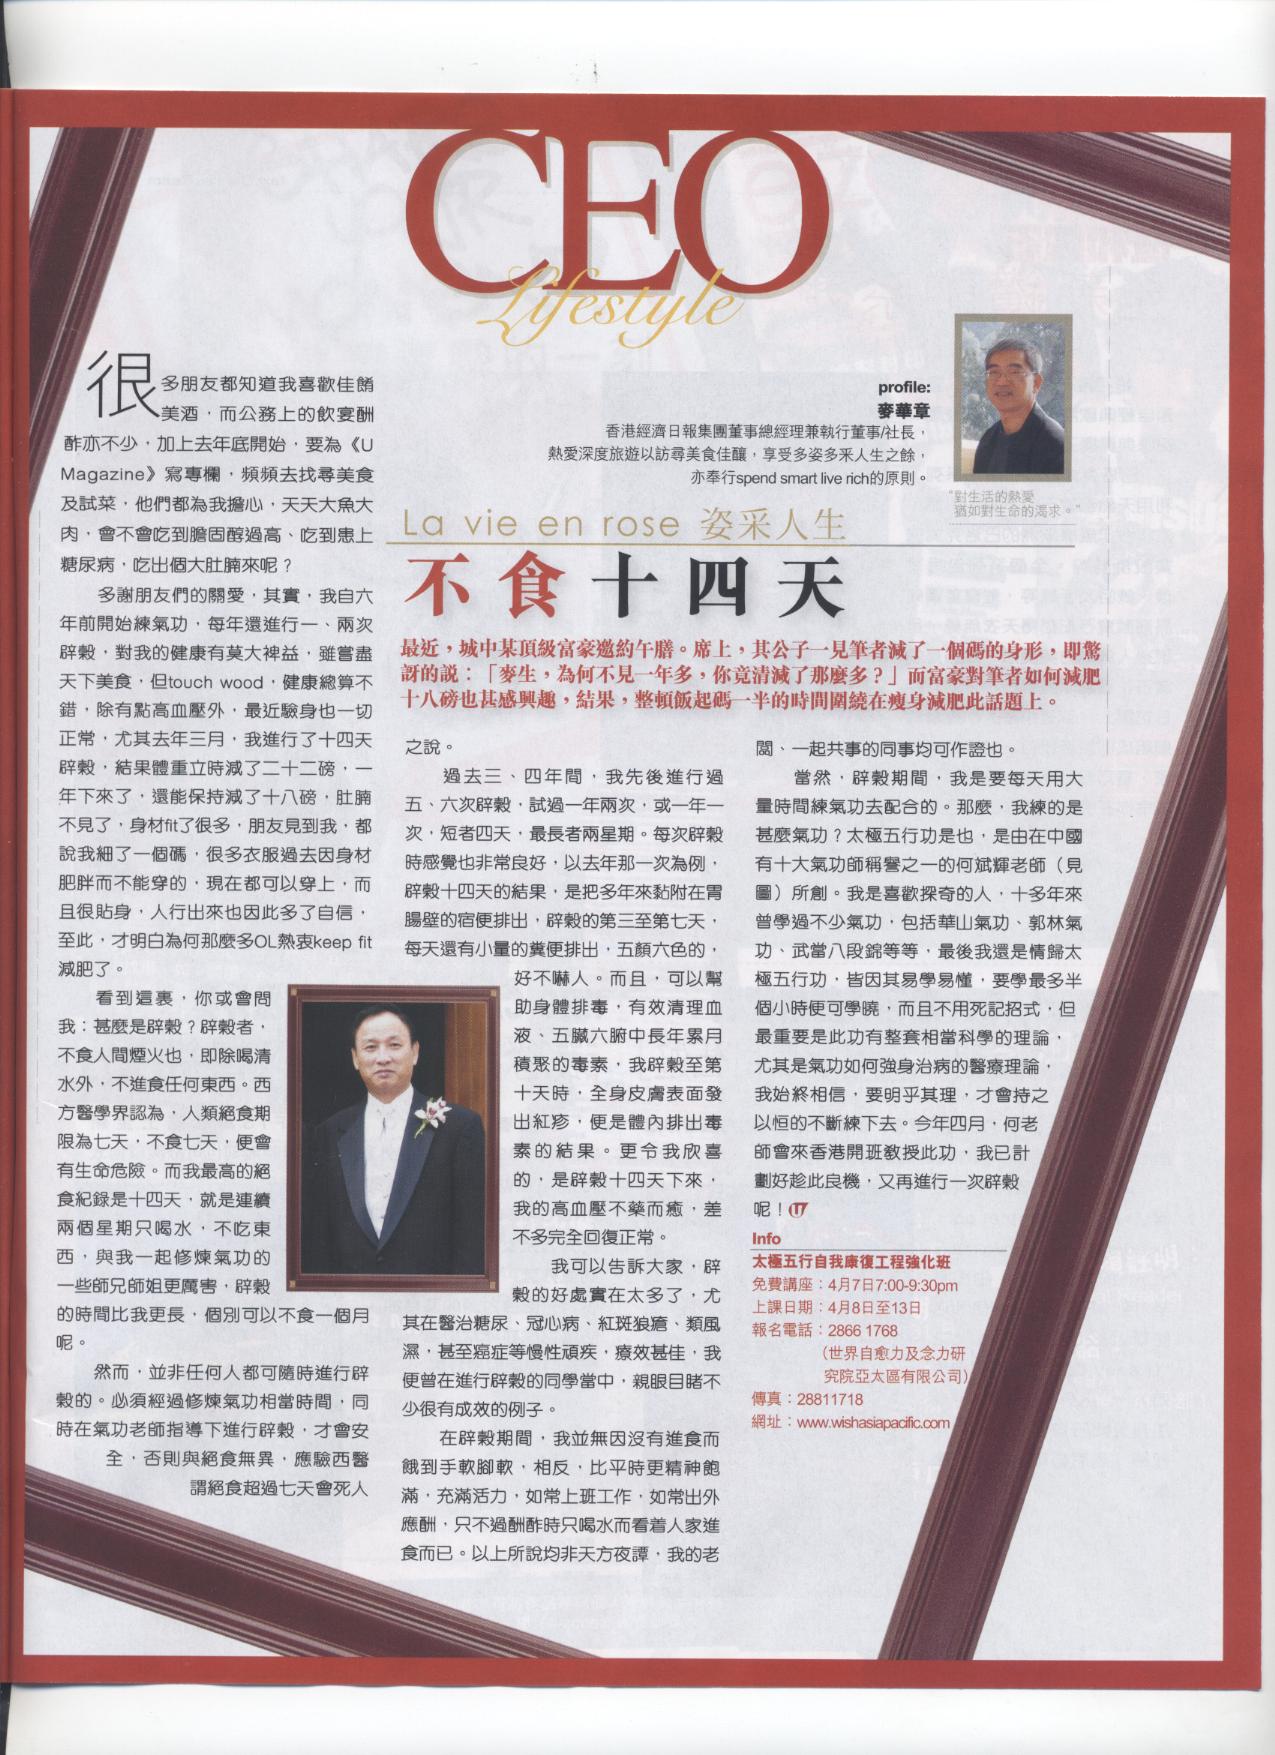 U Magazine: 2006年3月17日 (CEO Lifestyle 不食十四天)